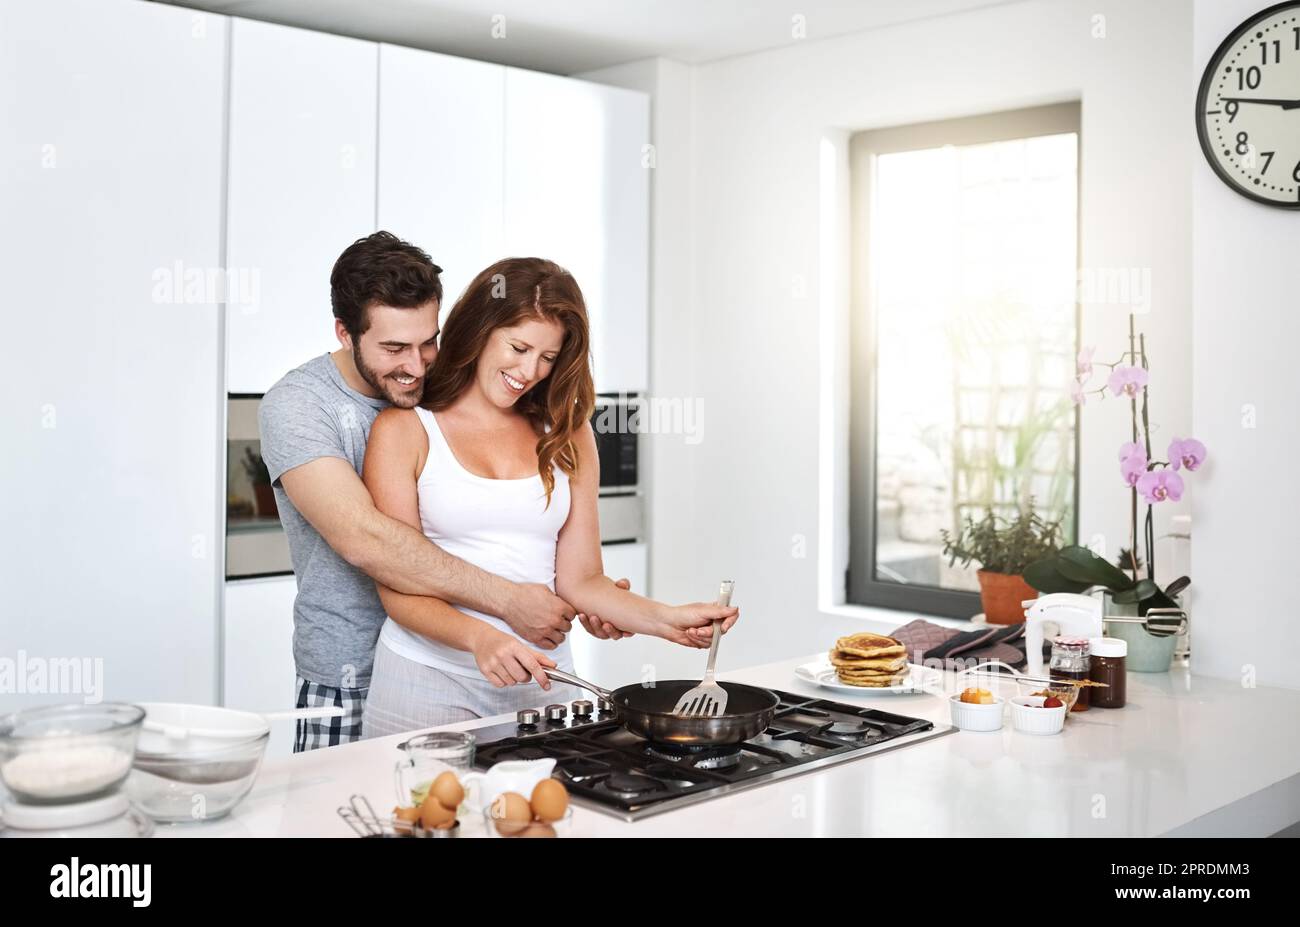 Avremmo potuto fare altre mattine come questa: Una giovane coppia felice che preparava la colazione la mattina. Foto Stock